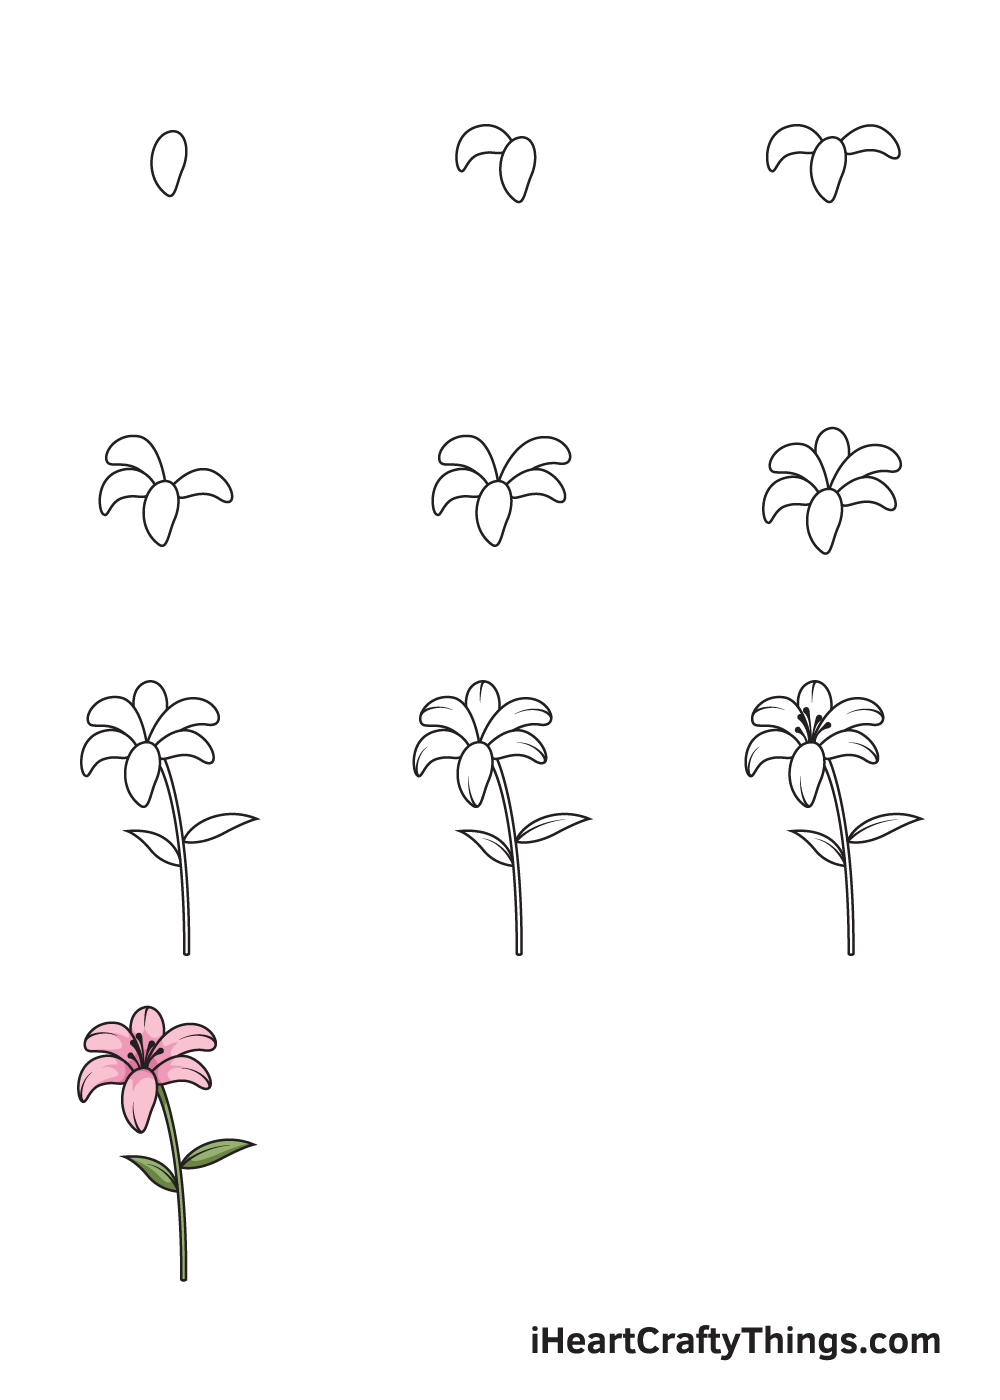 Cách vẽ các loại hoa đơn giản cho bé phát triển trí óc